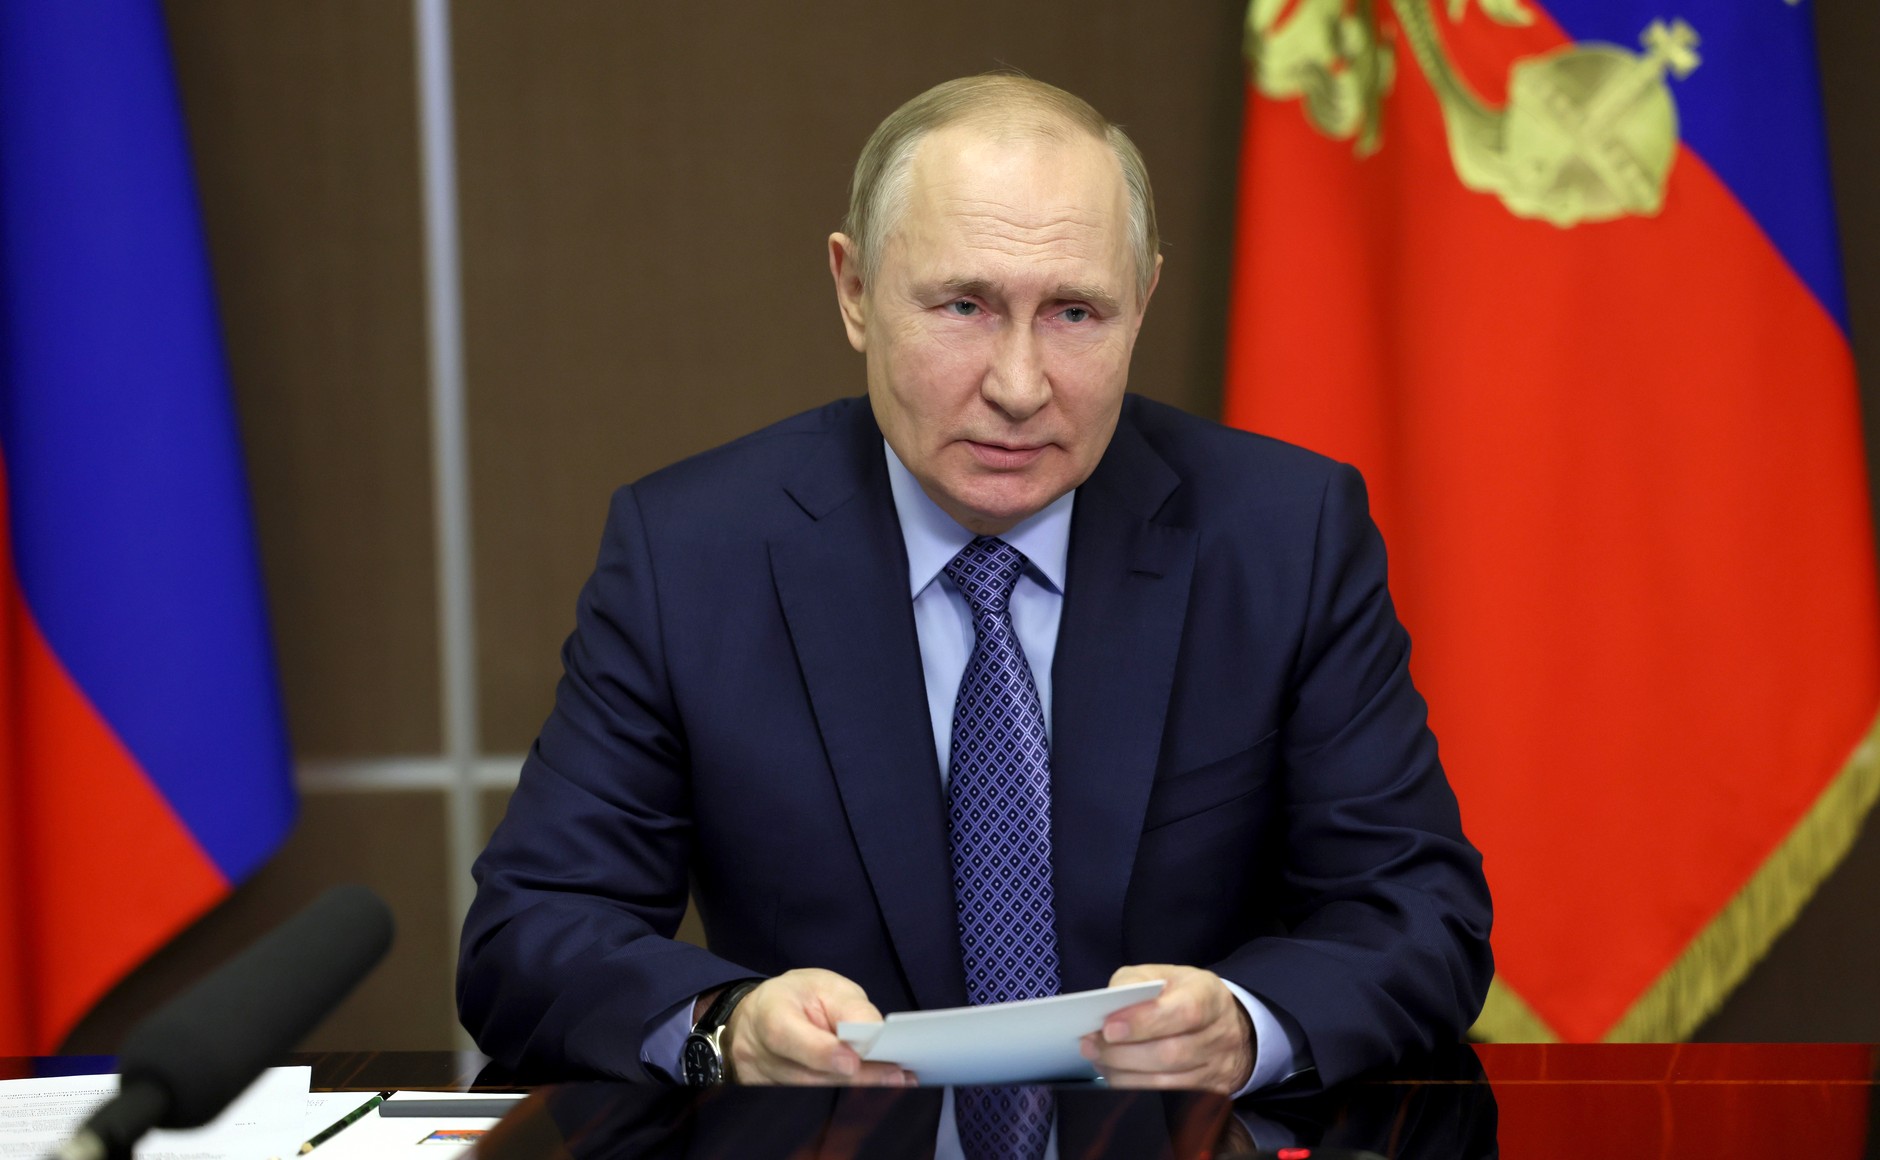 Владимир Путин отметил высокий уровень развития электроники и машиностроения в Беларуси